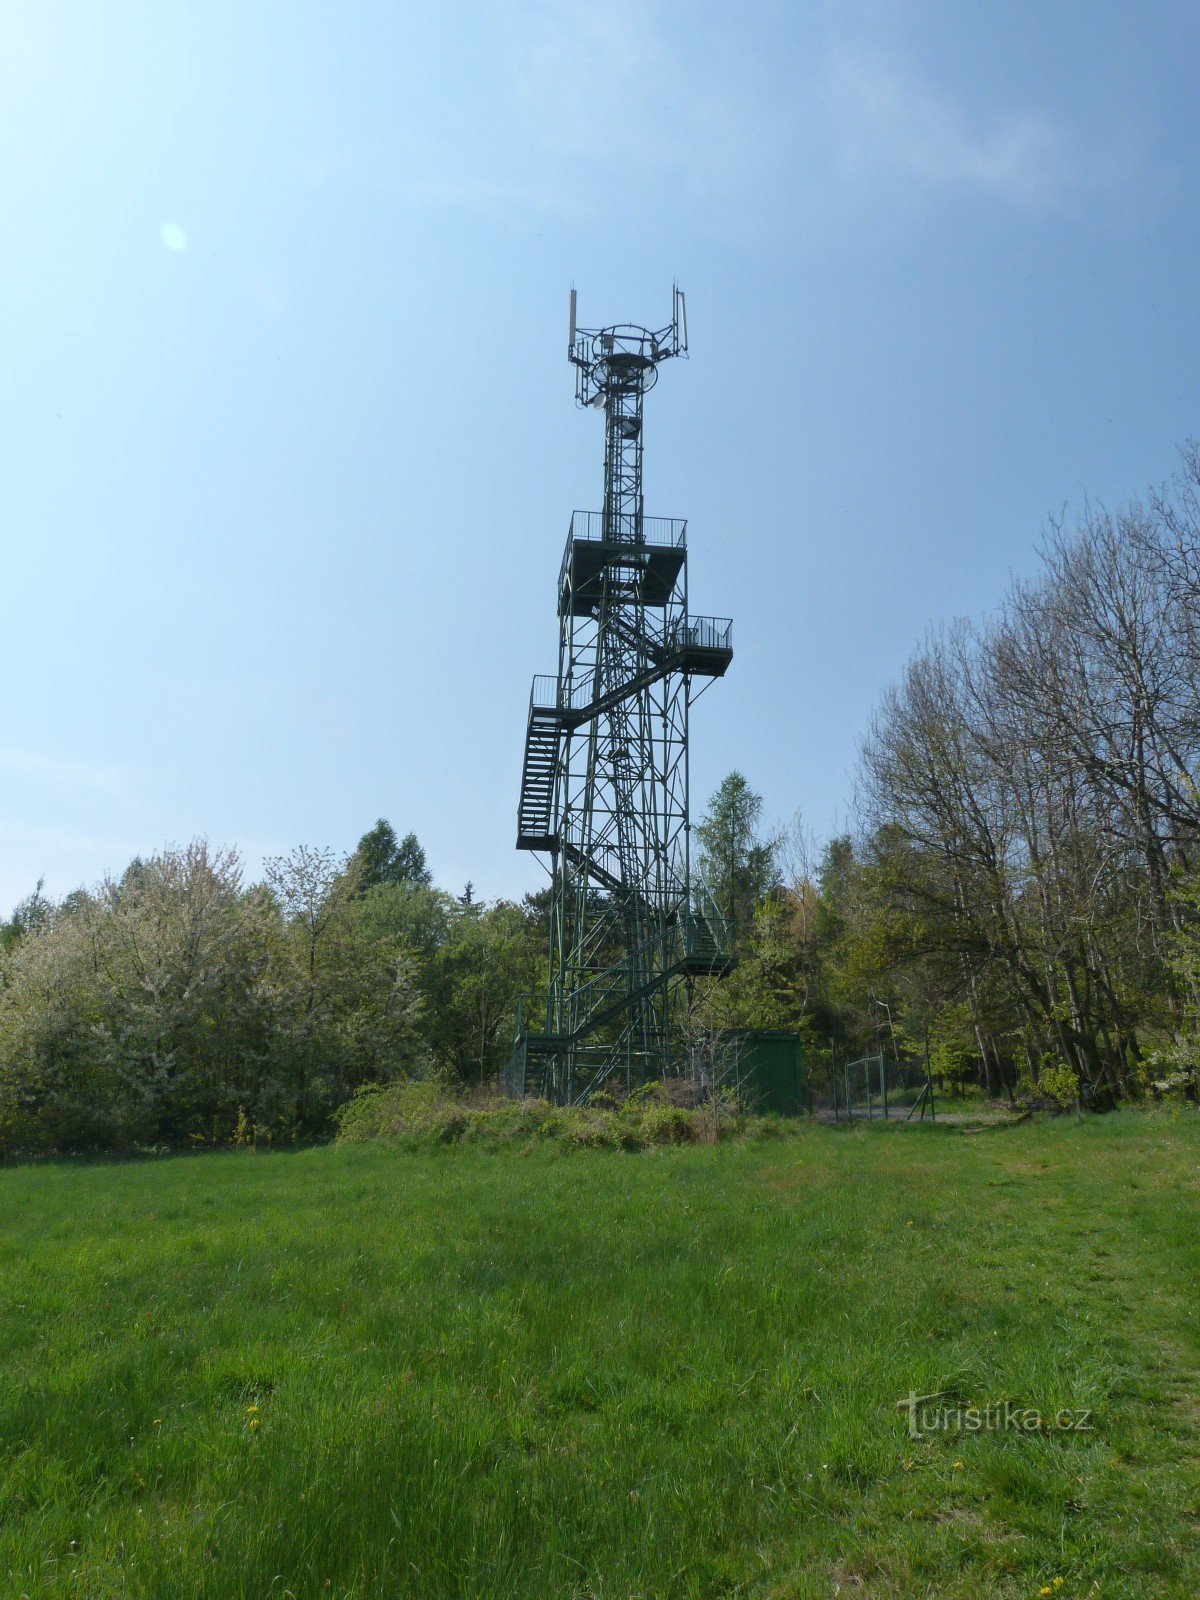 Turnul de observație Třenická hora lângă Cerhovice